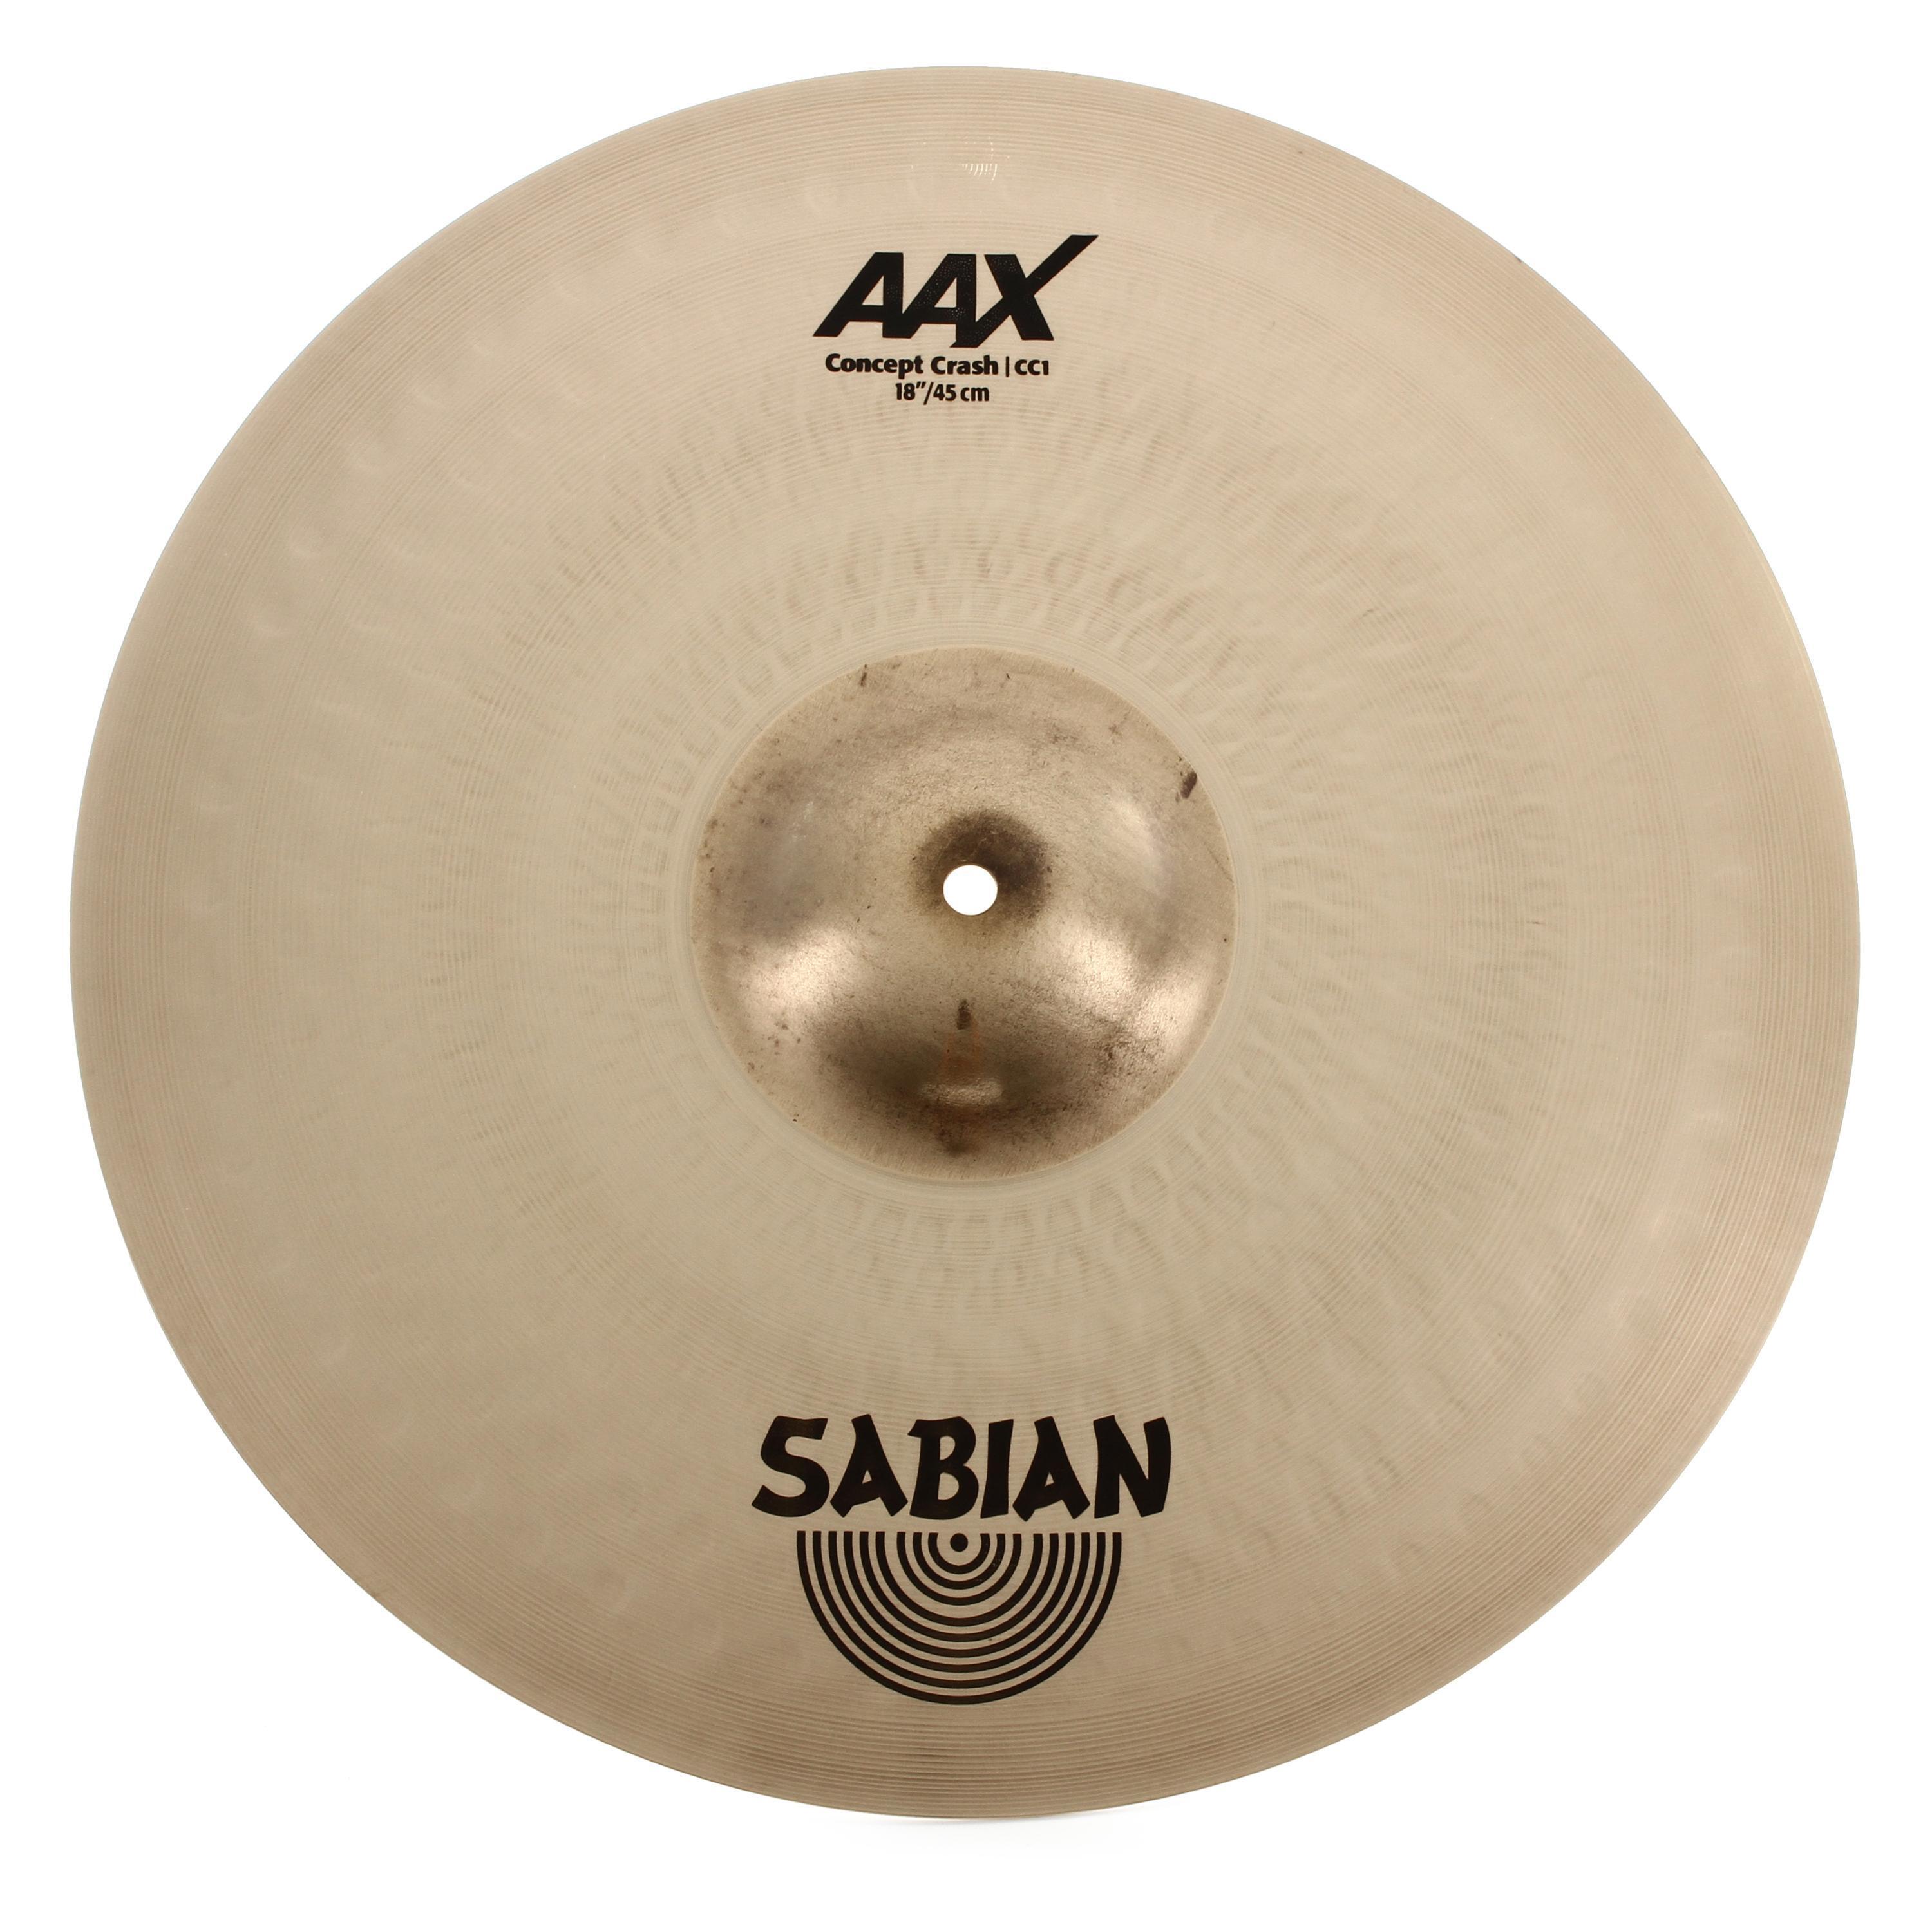 Sabian AAX Concept Crash Cymbal - 18